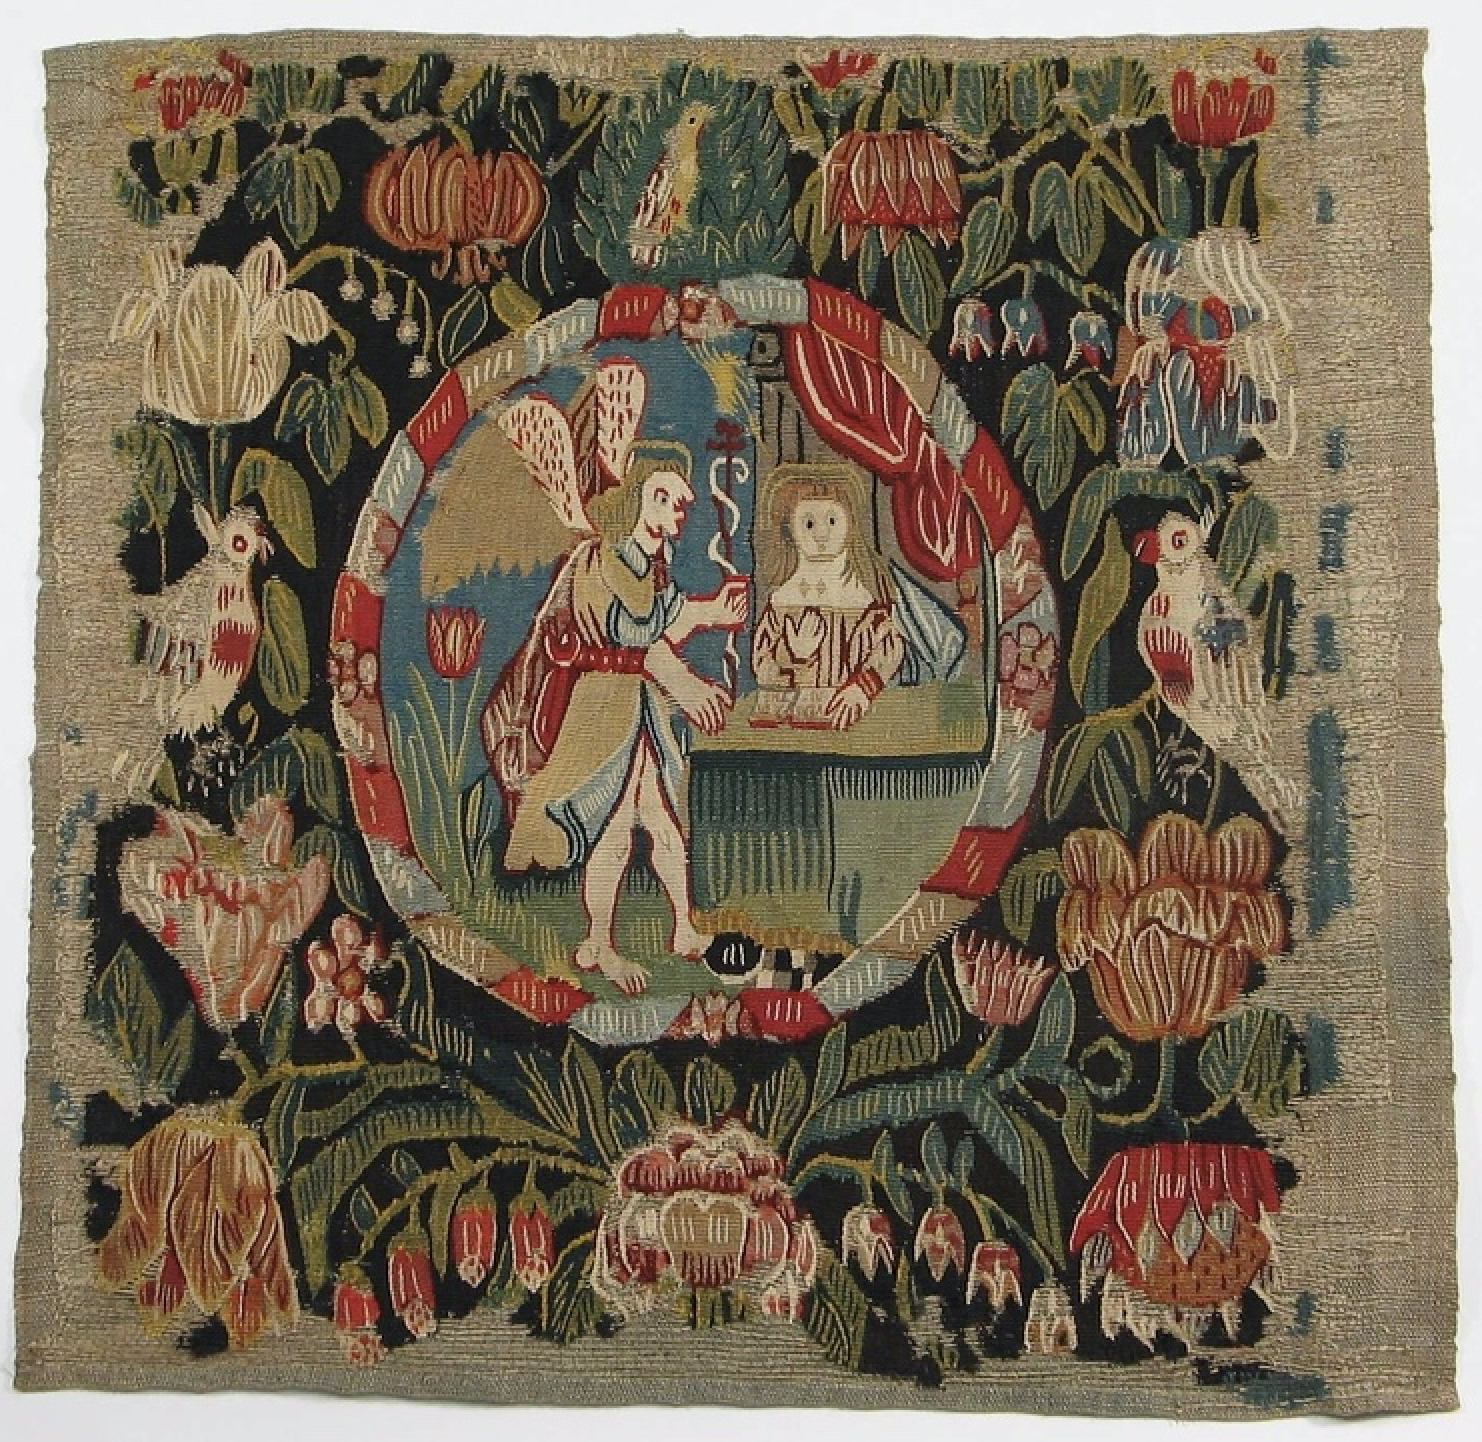 tapestry weaver